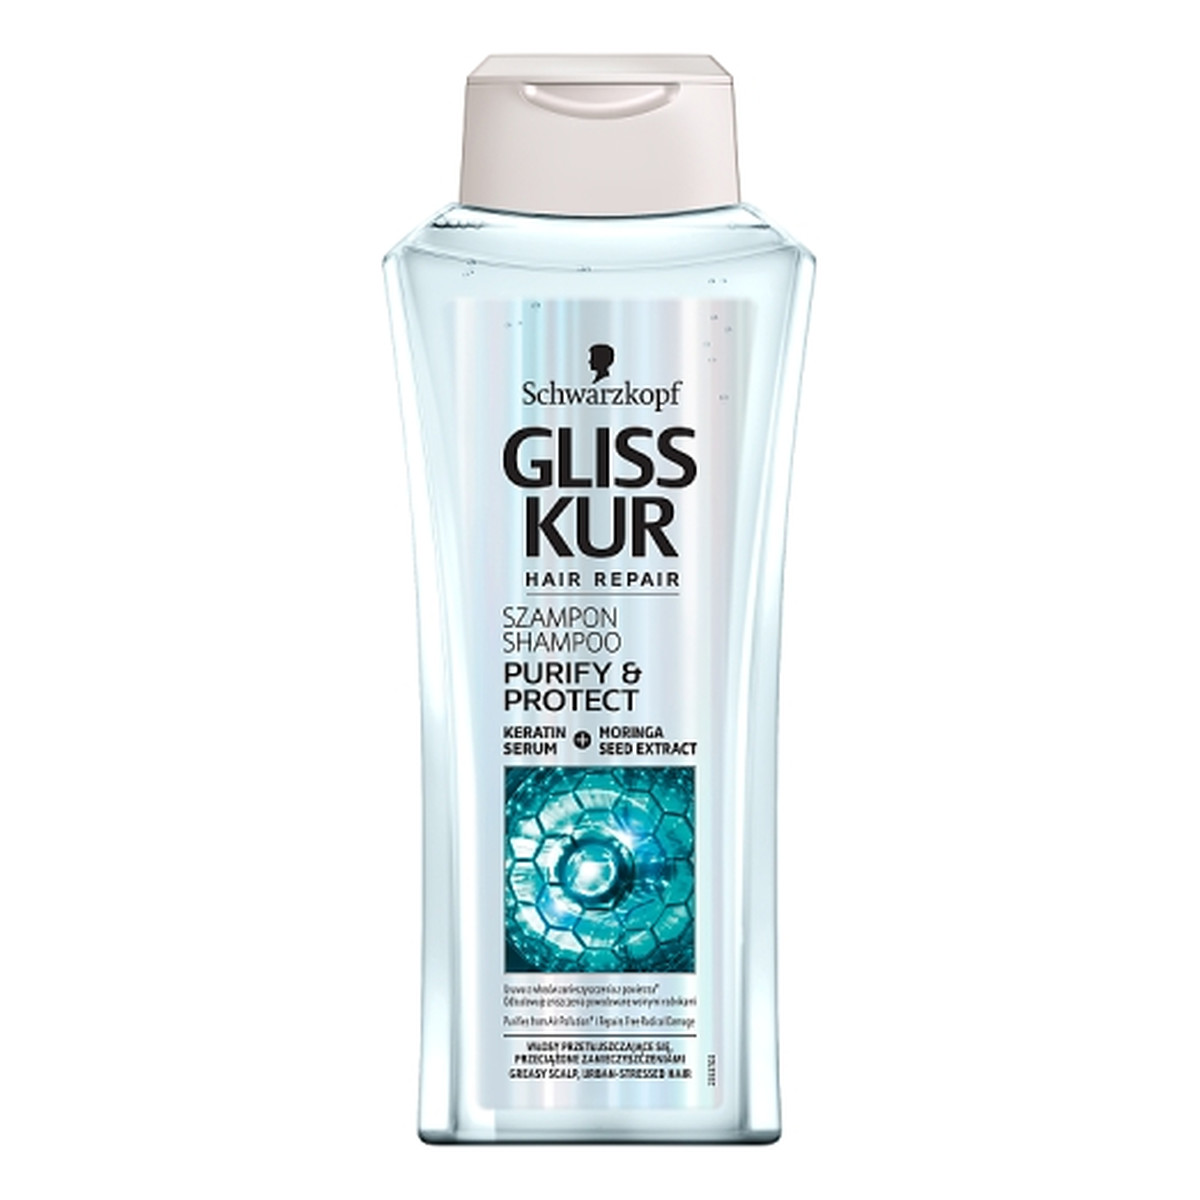 szampon gliss kur purify protect opinie